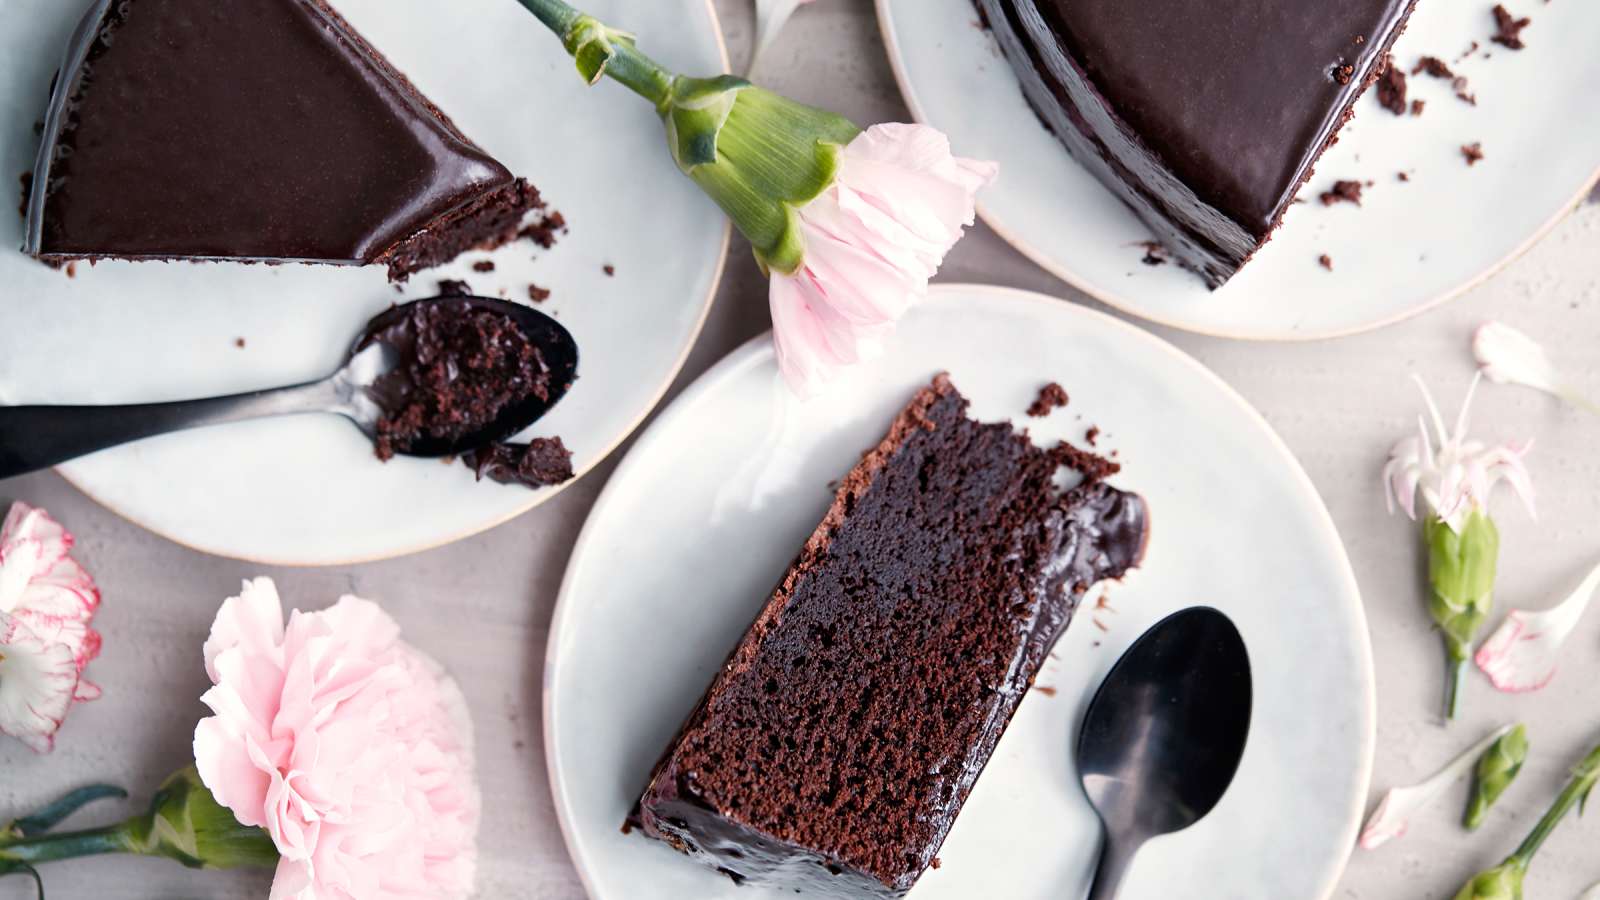 Kolme suklaakakkupalaa kakkulautasilla, kaksi lusikkaa ja vaaleanpunaisia neilikoita pöydän päällä.